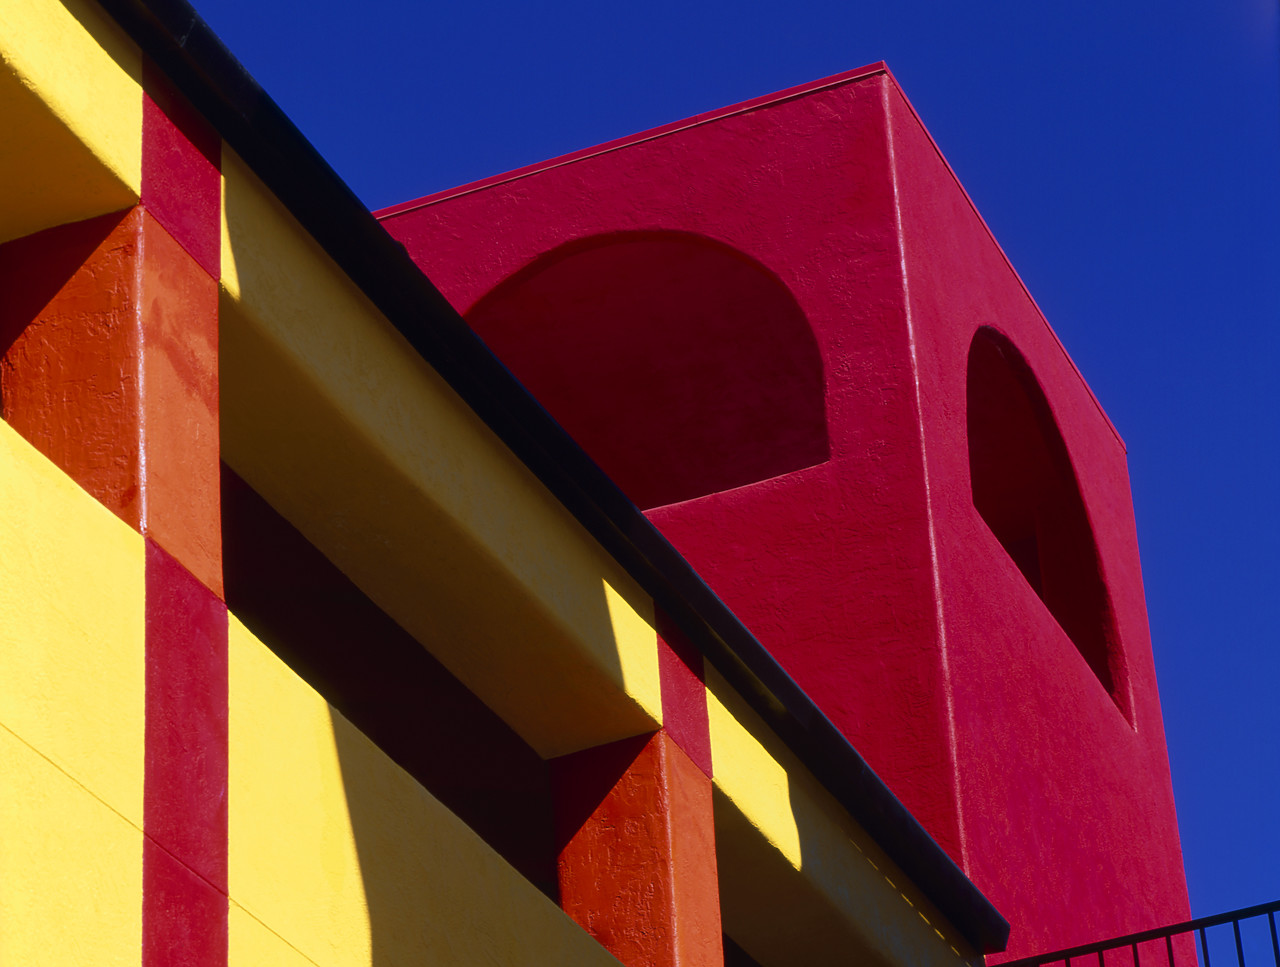 #990686-2 - La Placita Architectural design, Tucson, Arizona, USA